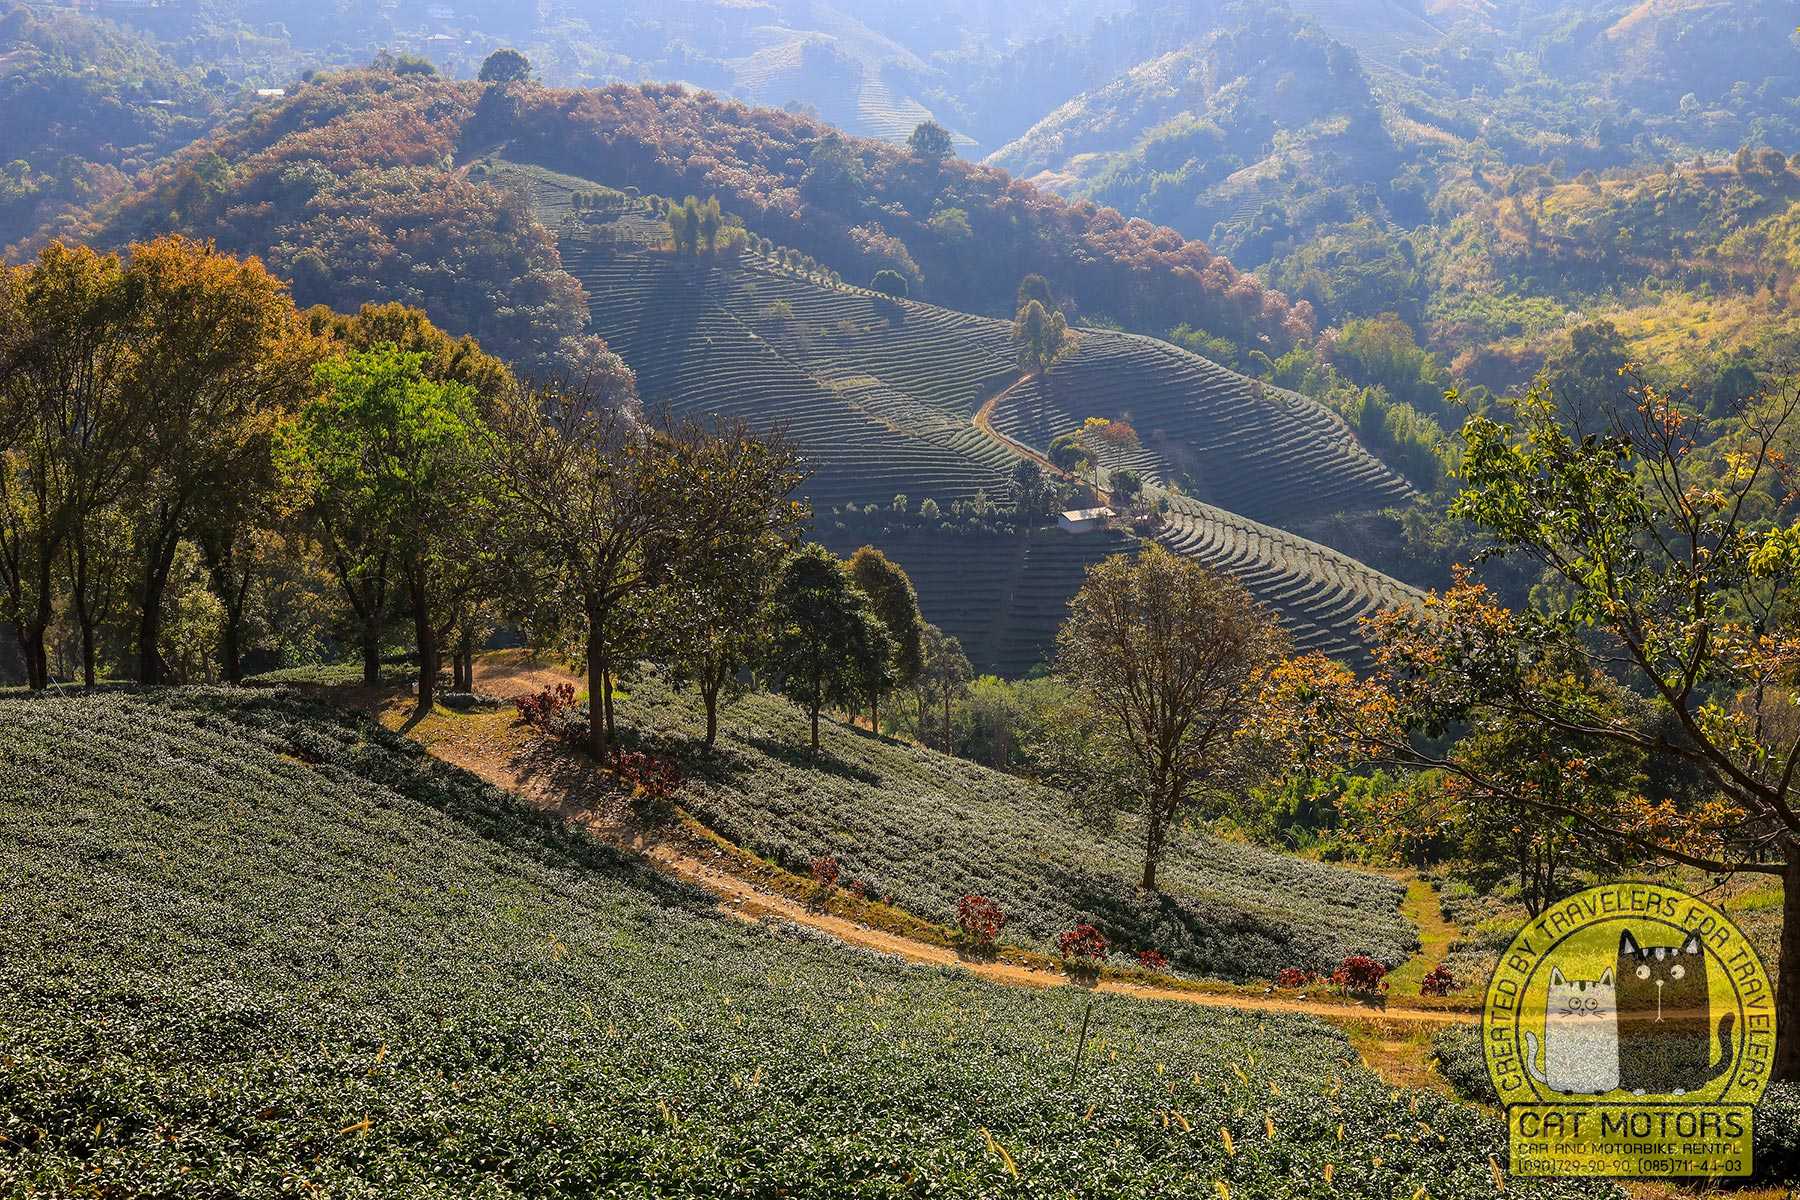 Wang Put Tan Tea Plantation